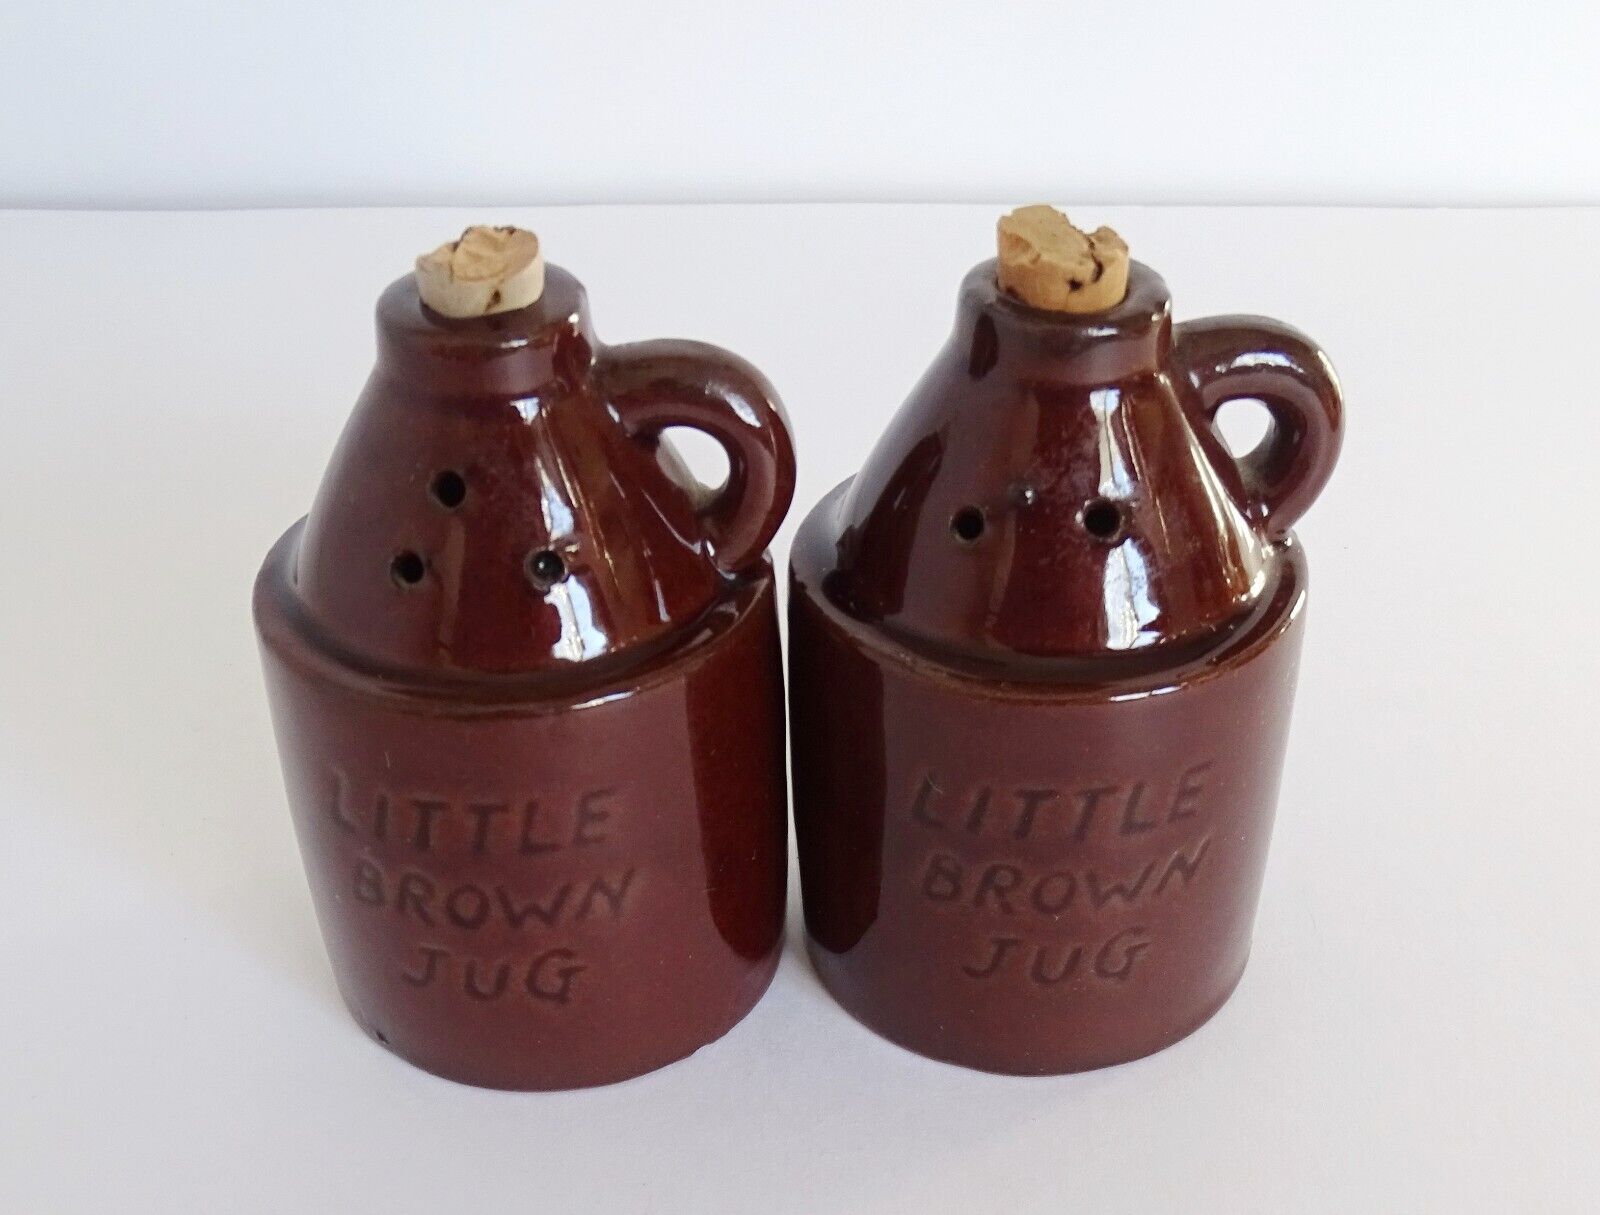 Vintage Little Brown Jug Salt and Pepper Shakers Japan